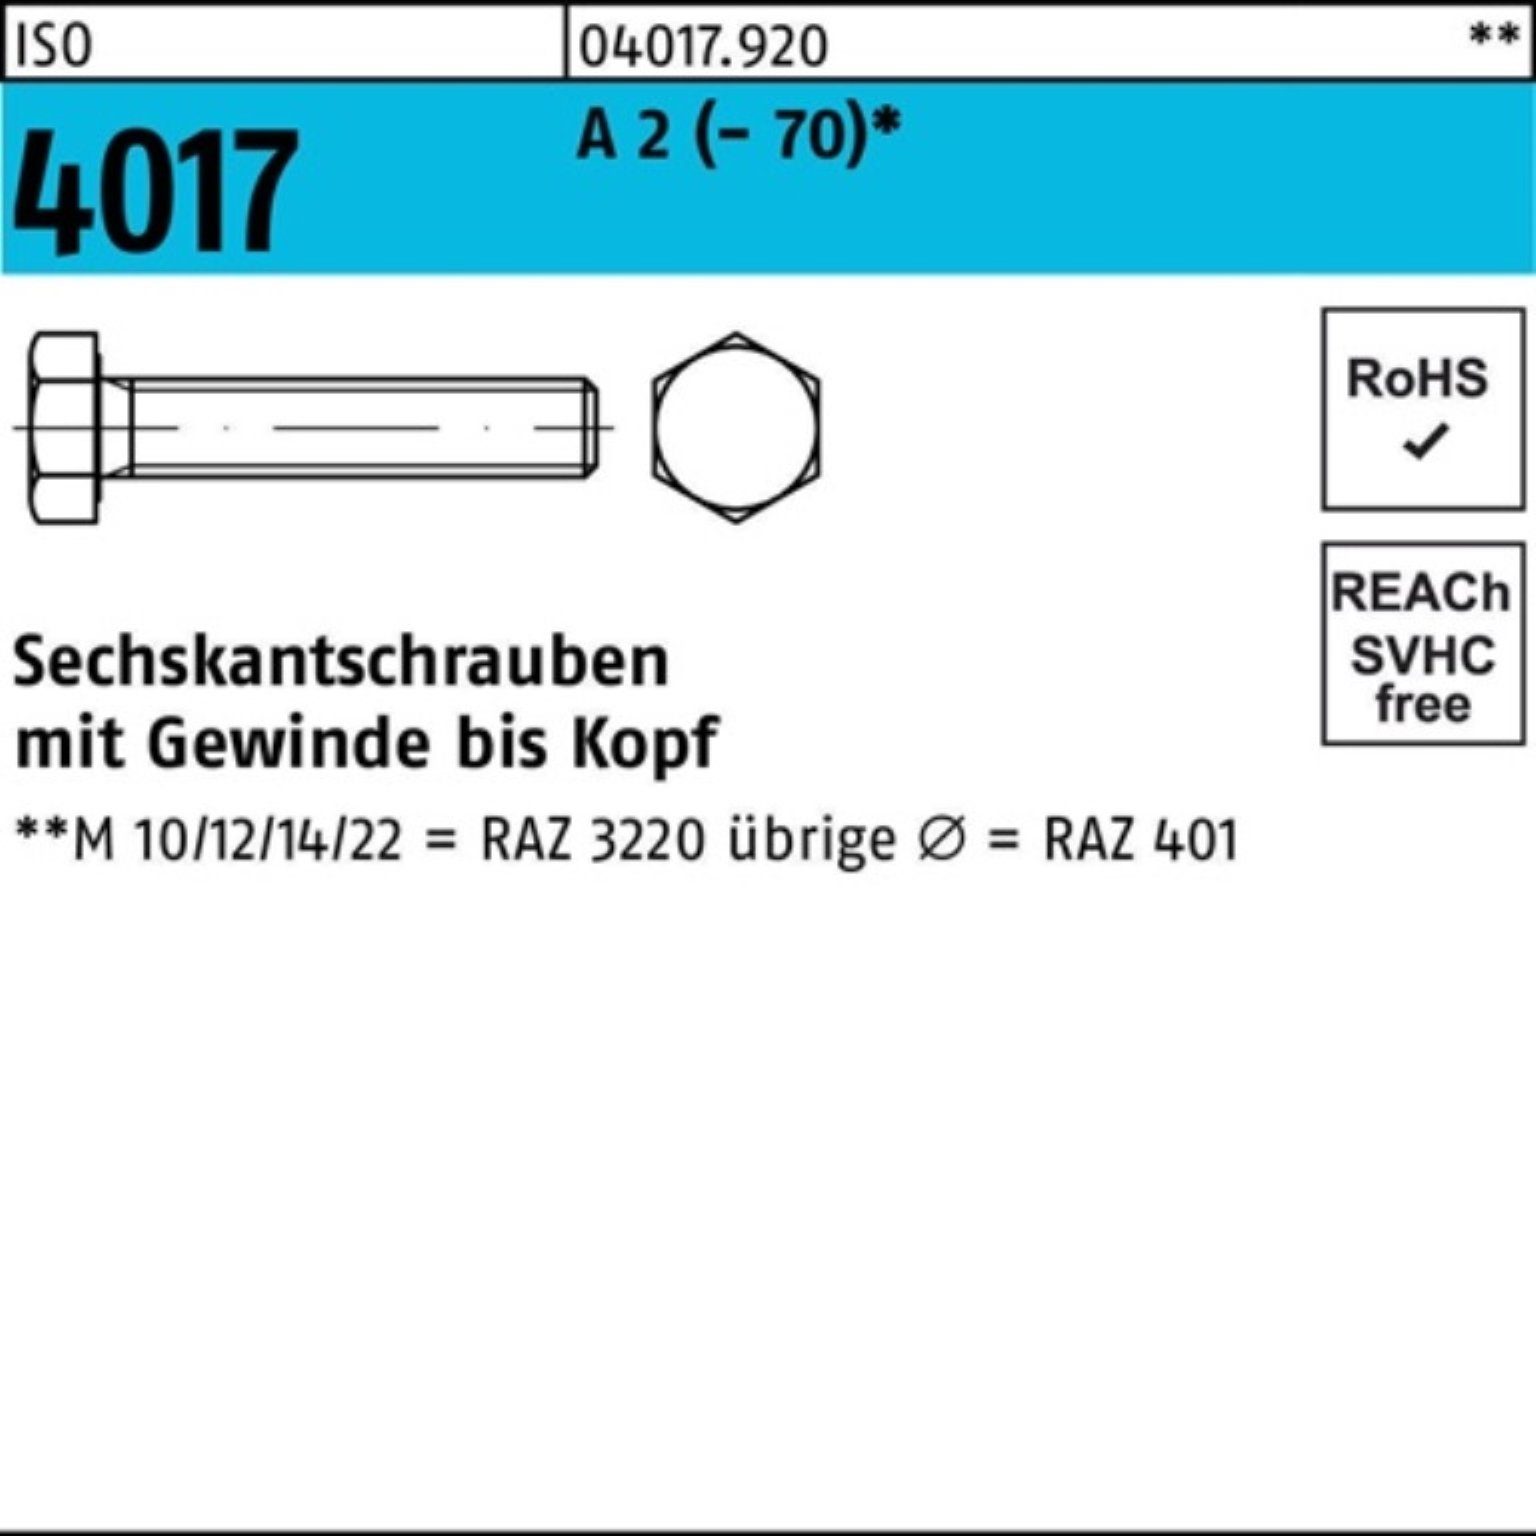 Bufab Sechskantschraube 100er Pack Sechskantschraube ISO 4017 VG M12x 16 A 2 (70) 100 Stück